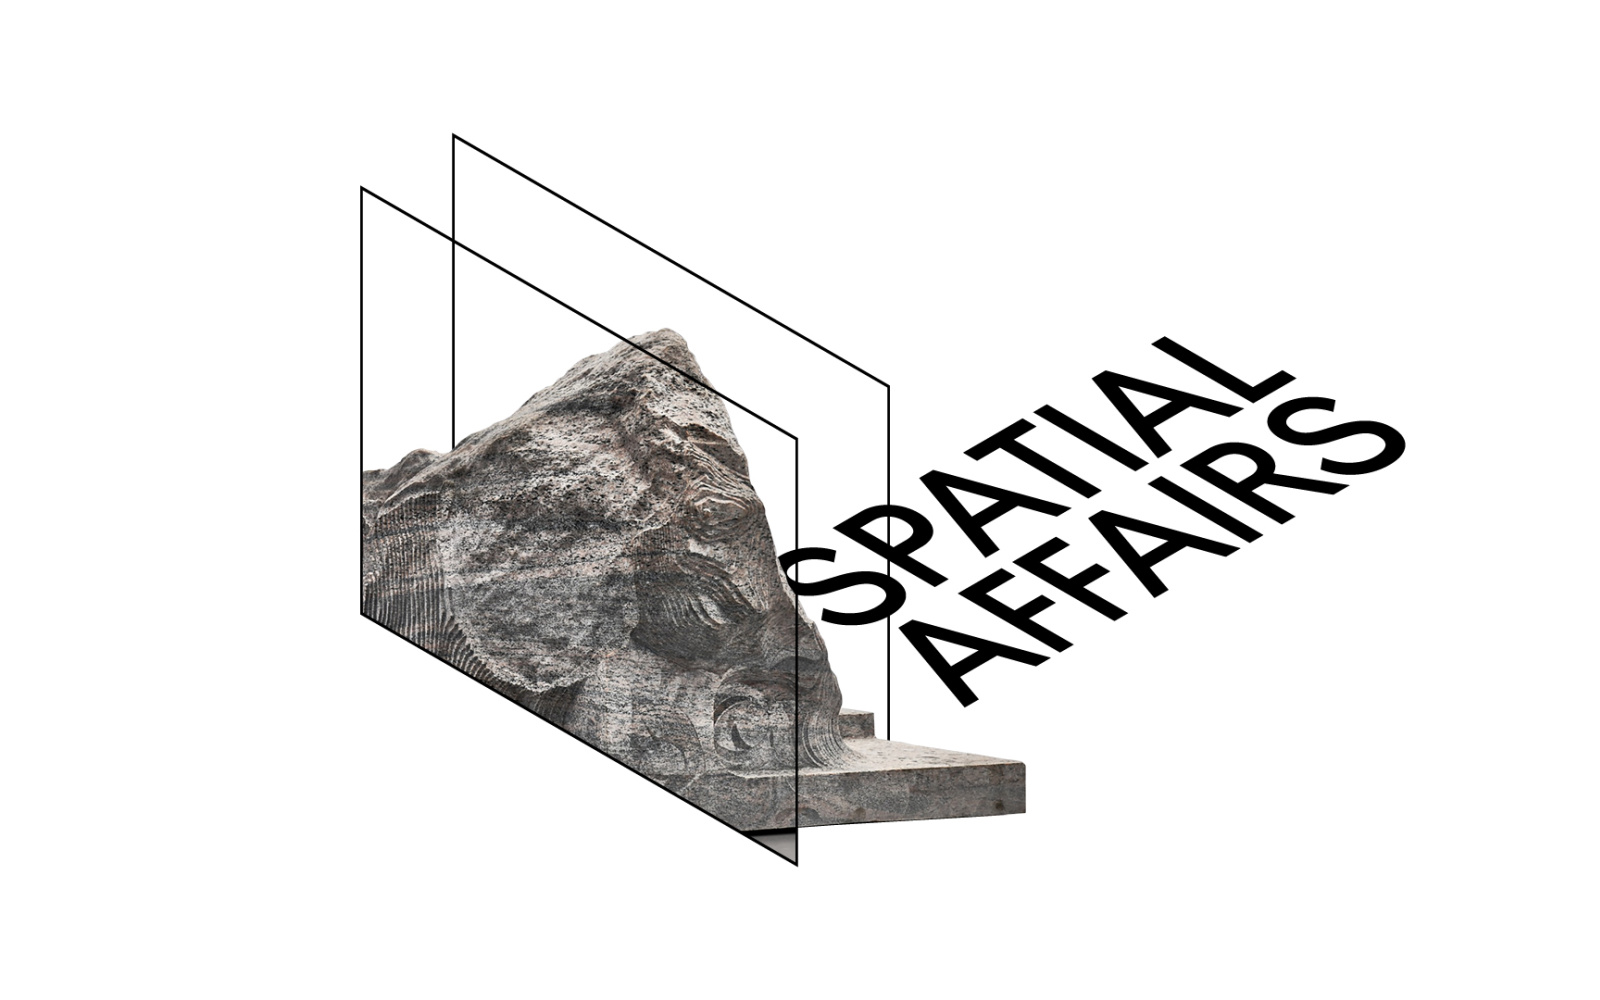 Schriftzug »Spatial Affairs« in räumlicher schwarzer Schrift, neben einem Ausschnitt aus einem Werk von Alicja Kwade: eine zweidimensionale Abbildung eines Felsen.